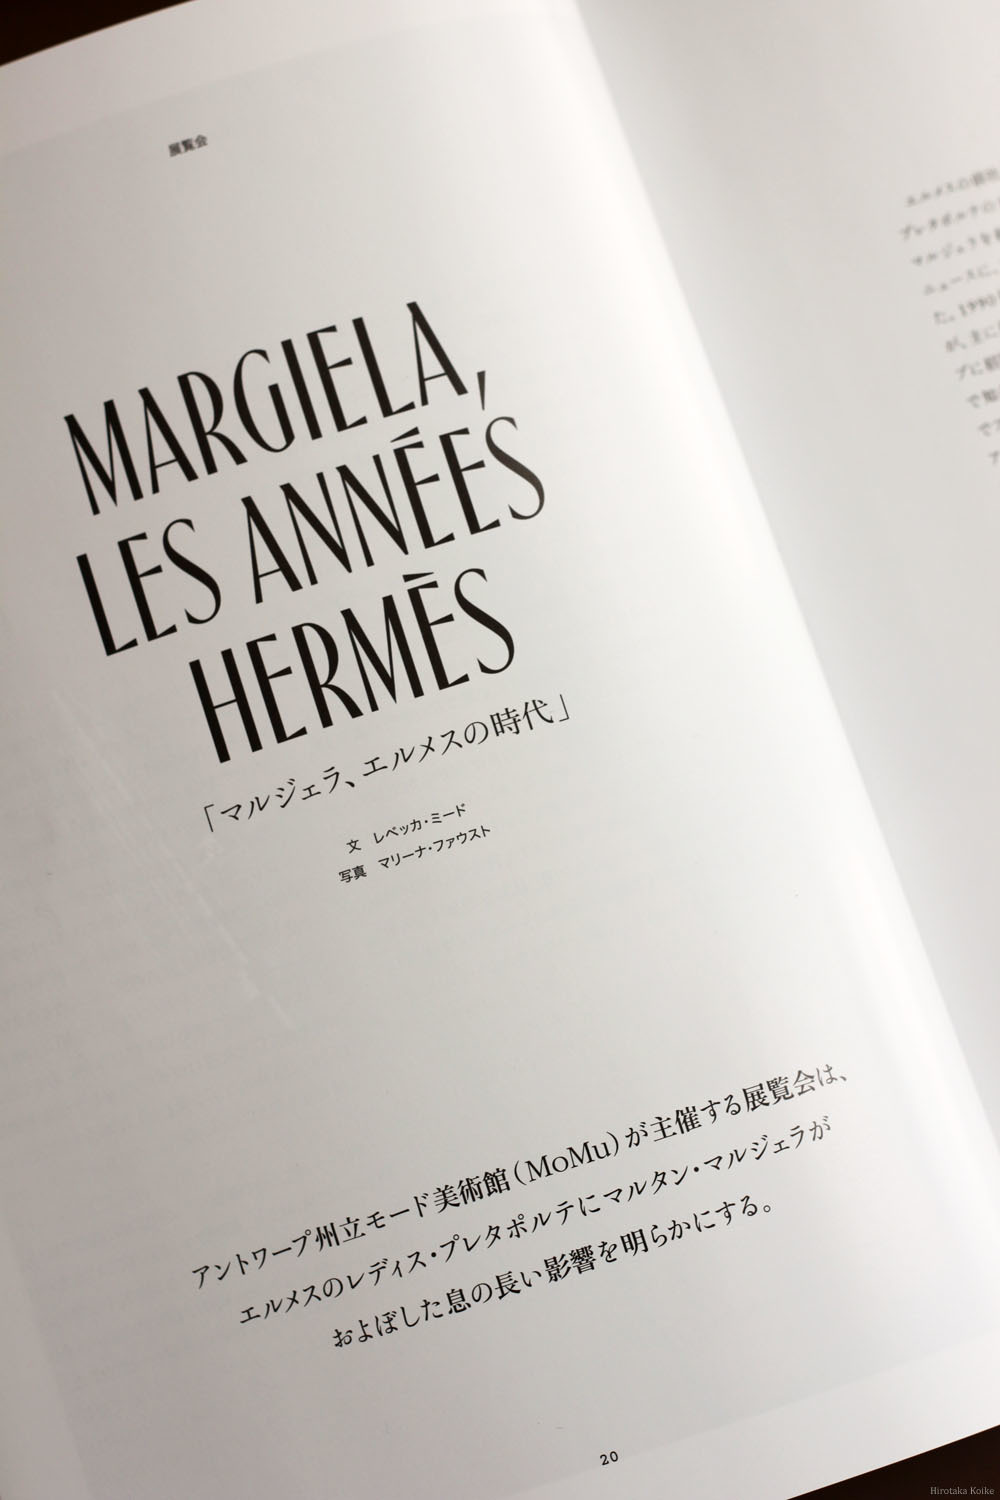 ファッションの記録 Vol.1『マルジェラ、エルメスの時代』に思いを馳せ